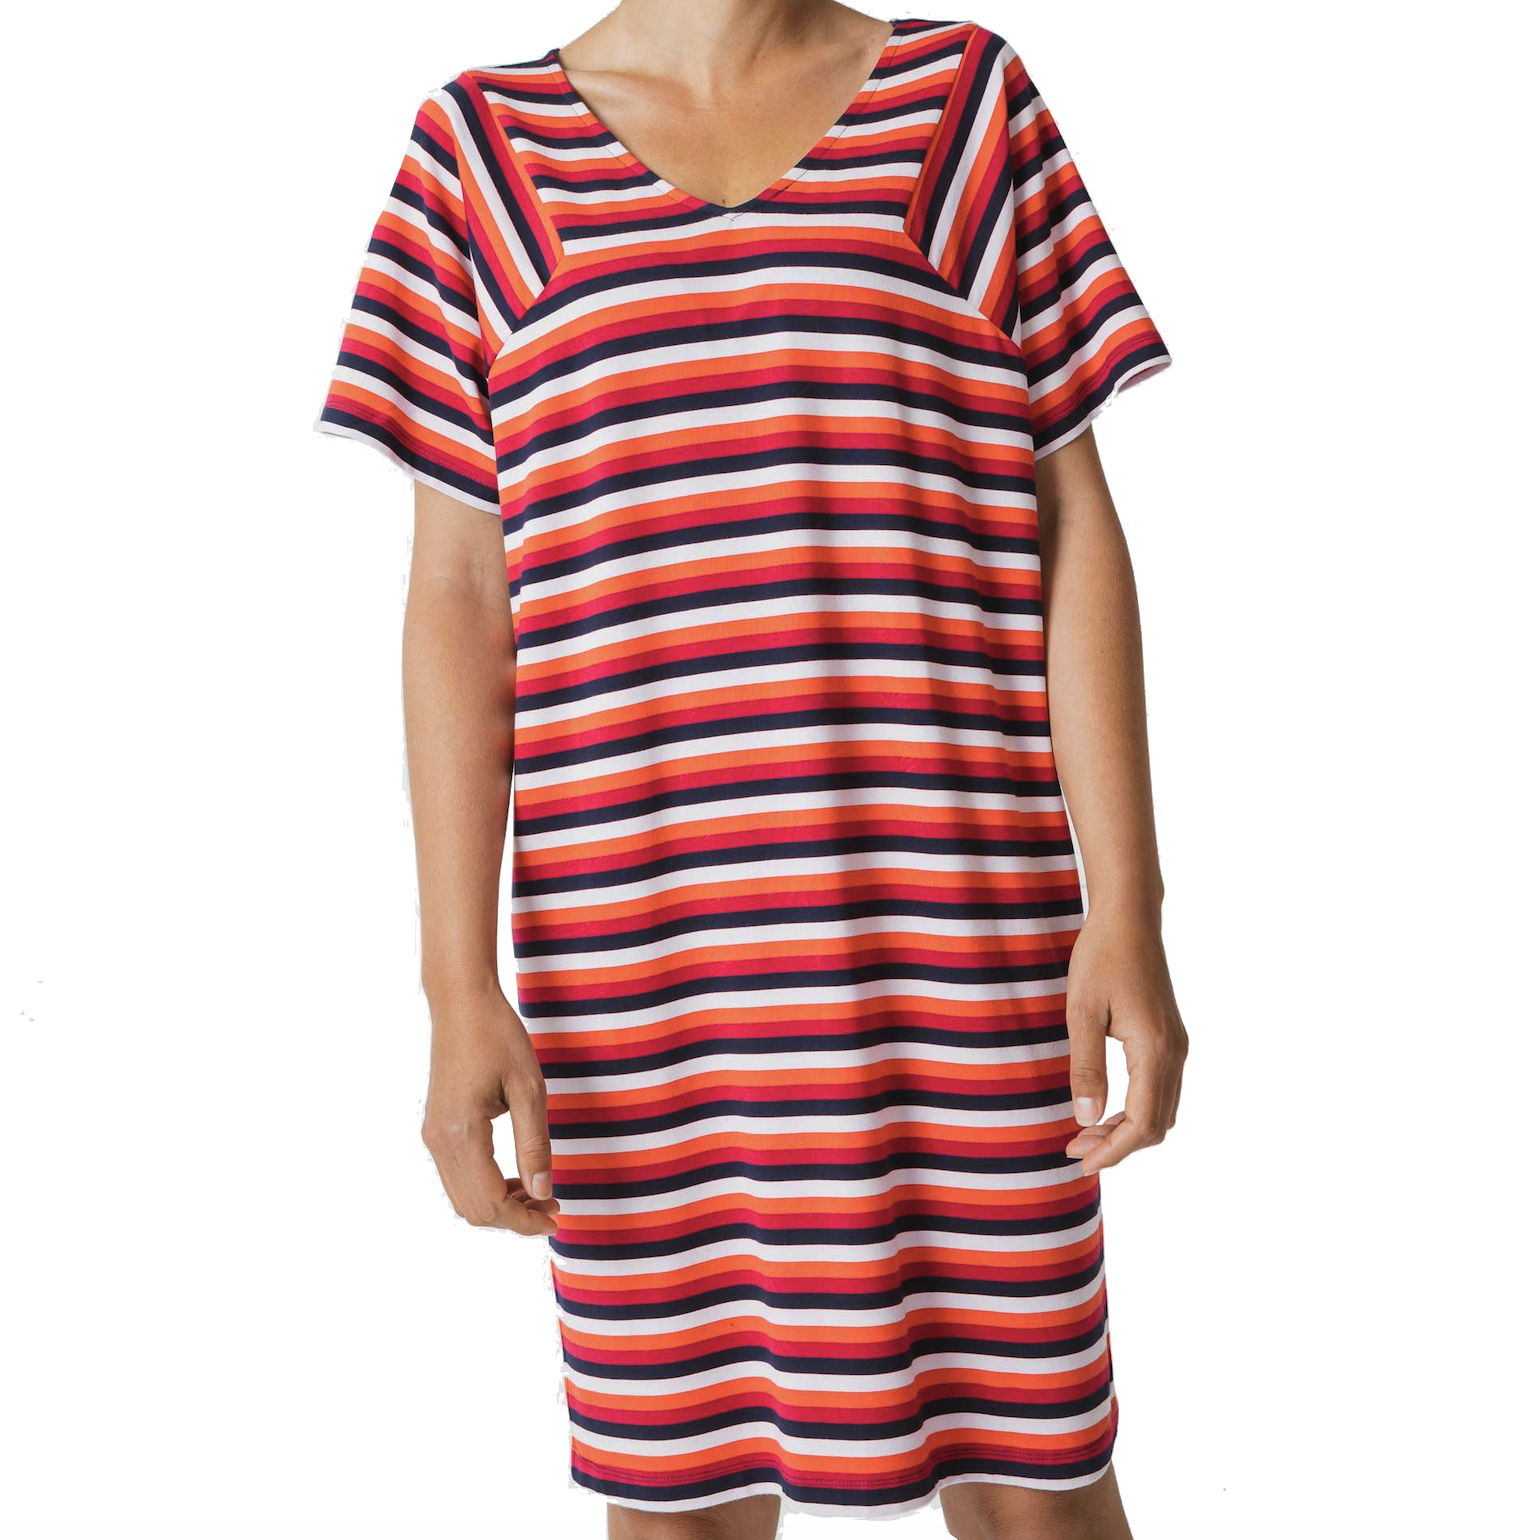 Skunkfunk Skfk, Ary Dress, red stripes, L (42)